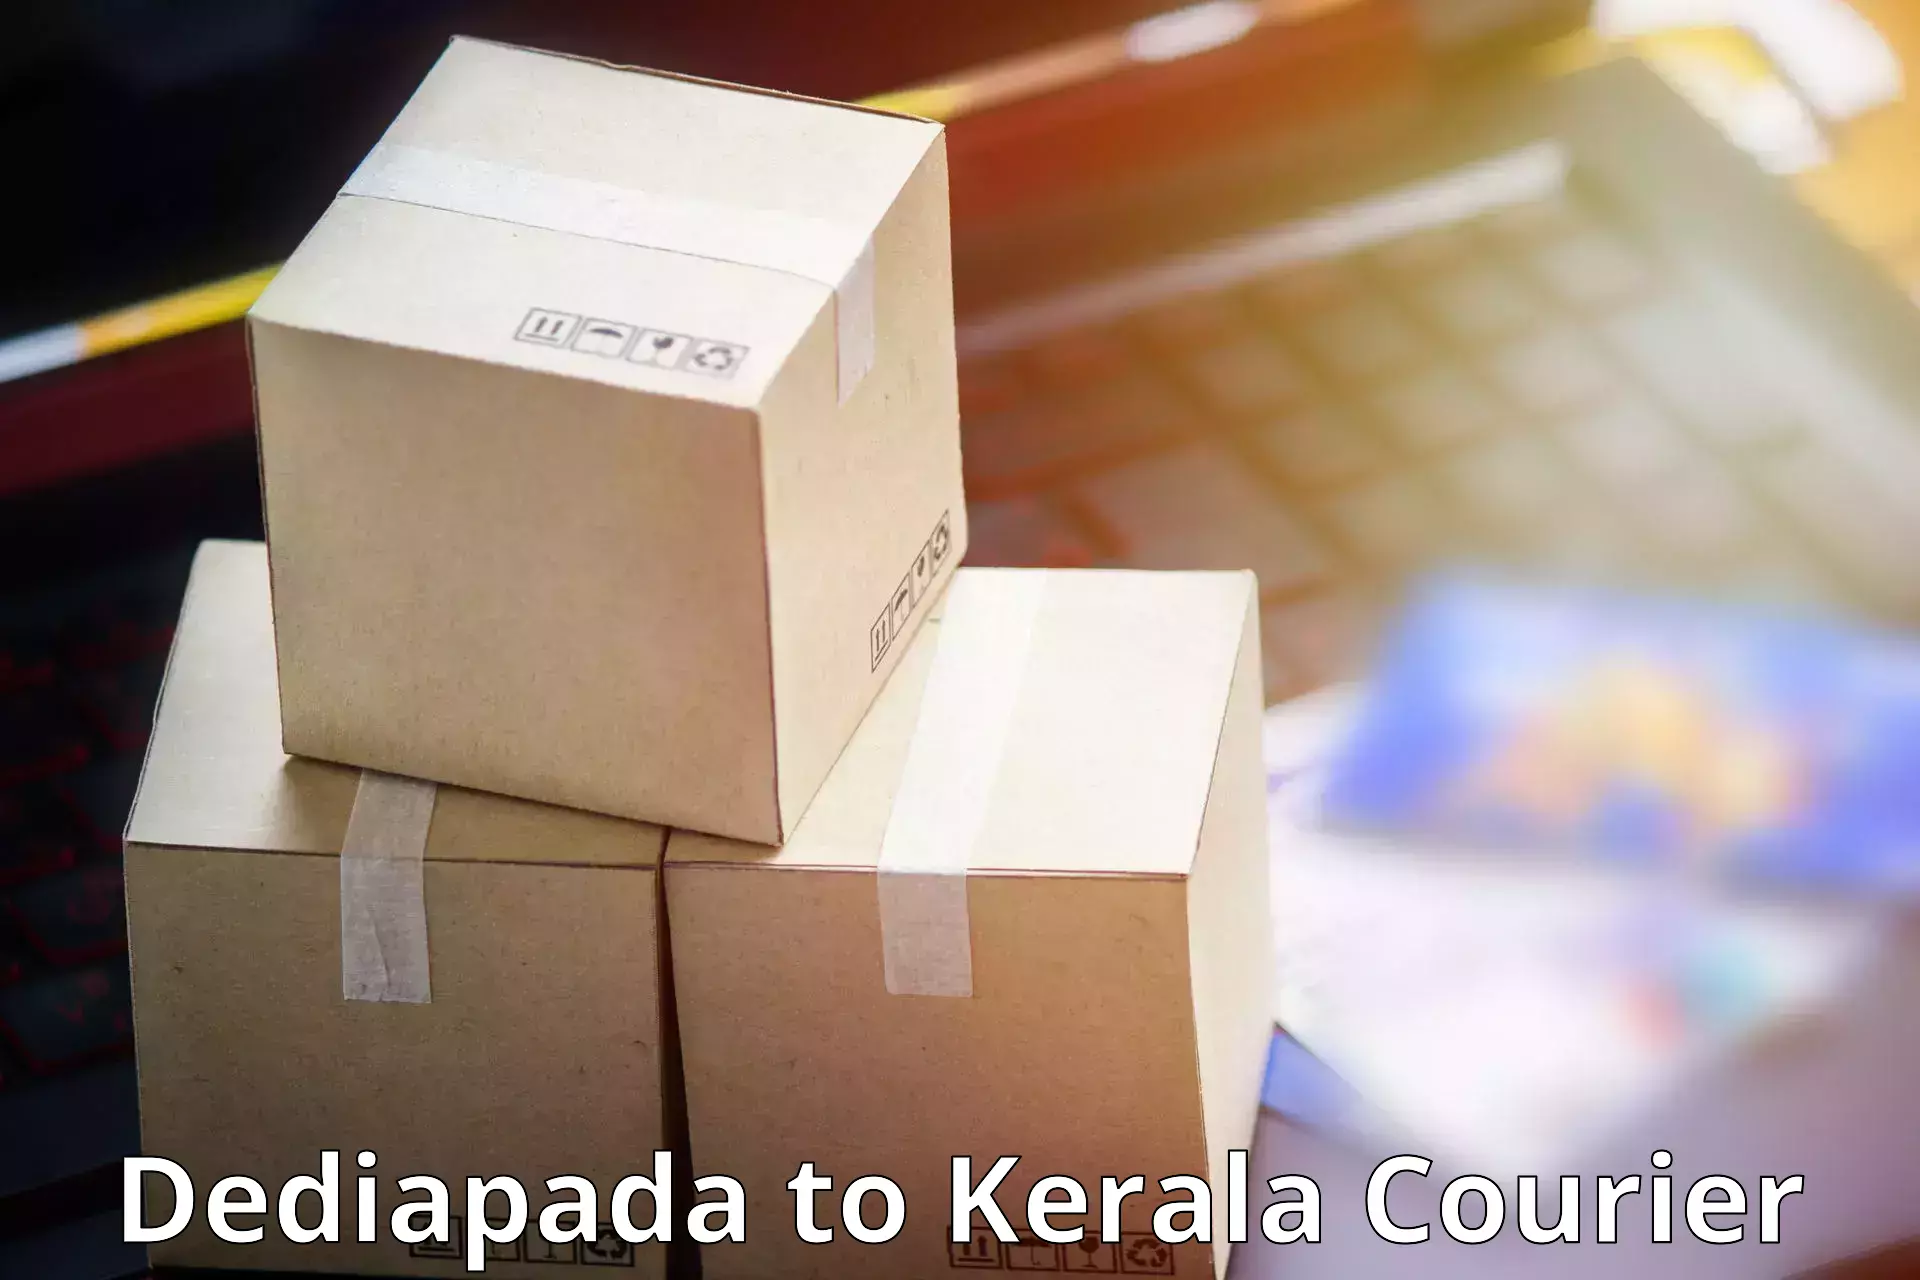 Custom courier packaging Dediapada to Cochin Port Kochi